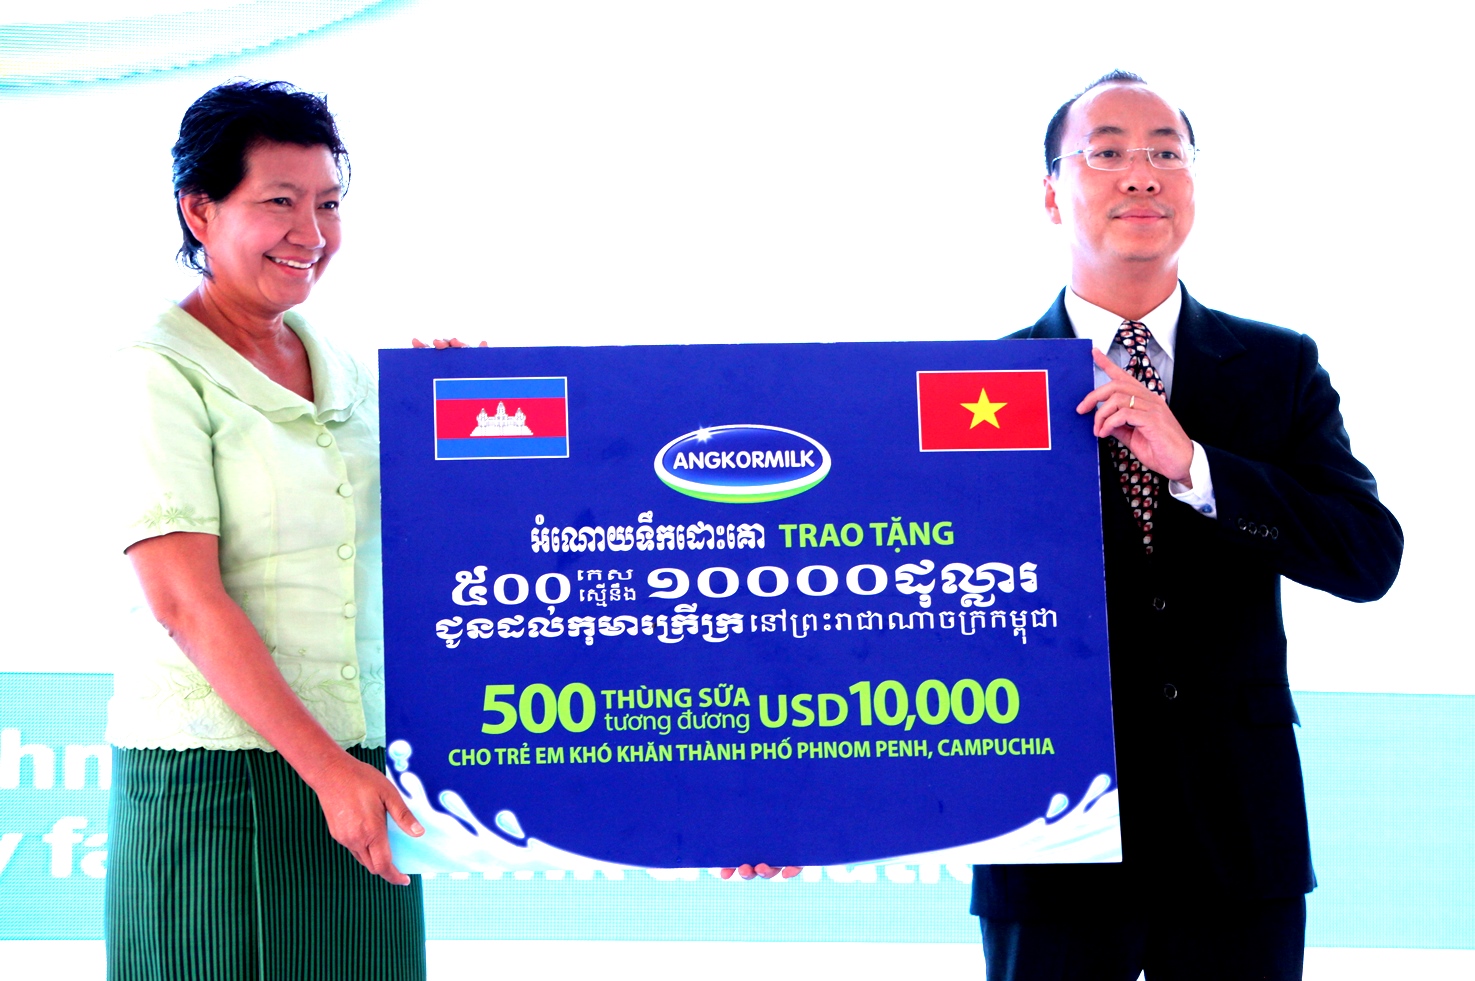 Tại lễ khánh thành Nhà máy Angkor, Ông Đoàn Quốc Khánh – Tổng Giám đốc Nhà máy Sữa Angkor đại diện Nhà máy đã gửi đến cho trẻ em nghèo của Phnom Penh 500 thùng sữa nước trị giá tương đương 10.000 USD để góp phần cải thiện tình trạng dinh dưỡng cho trẻ em Campuchia